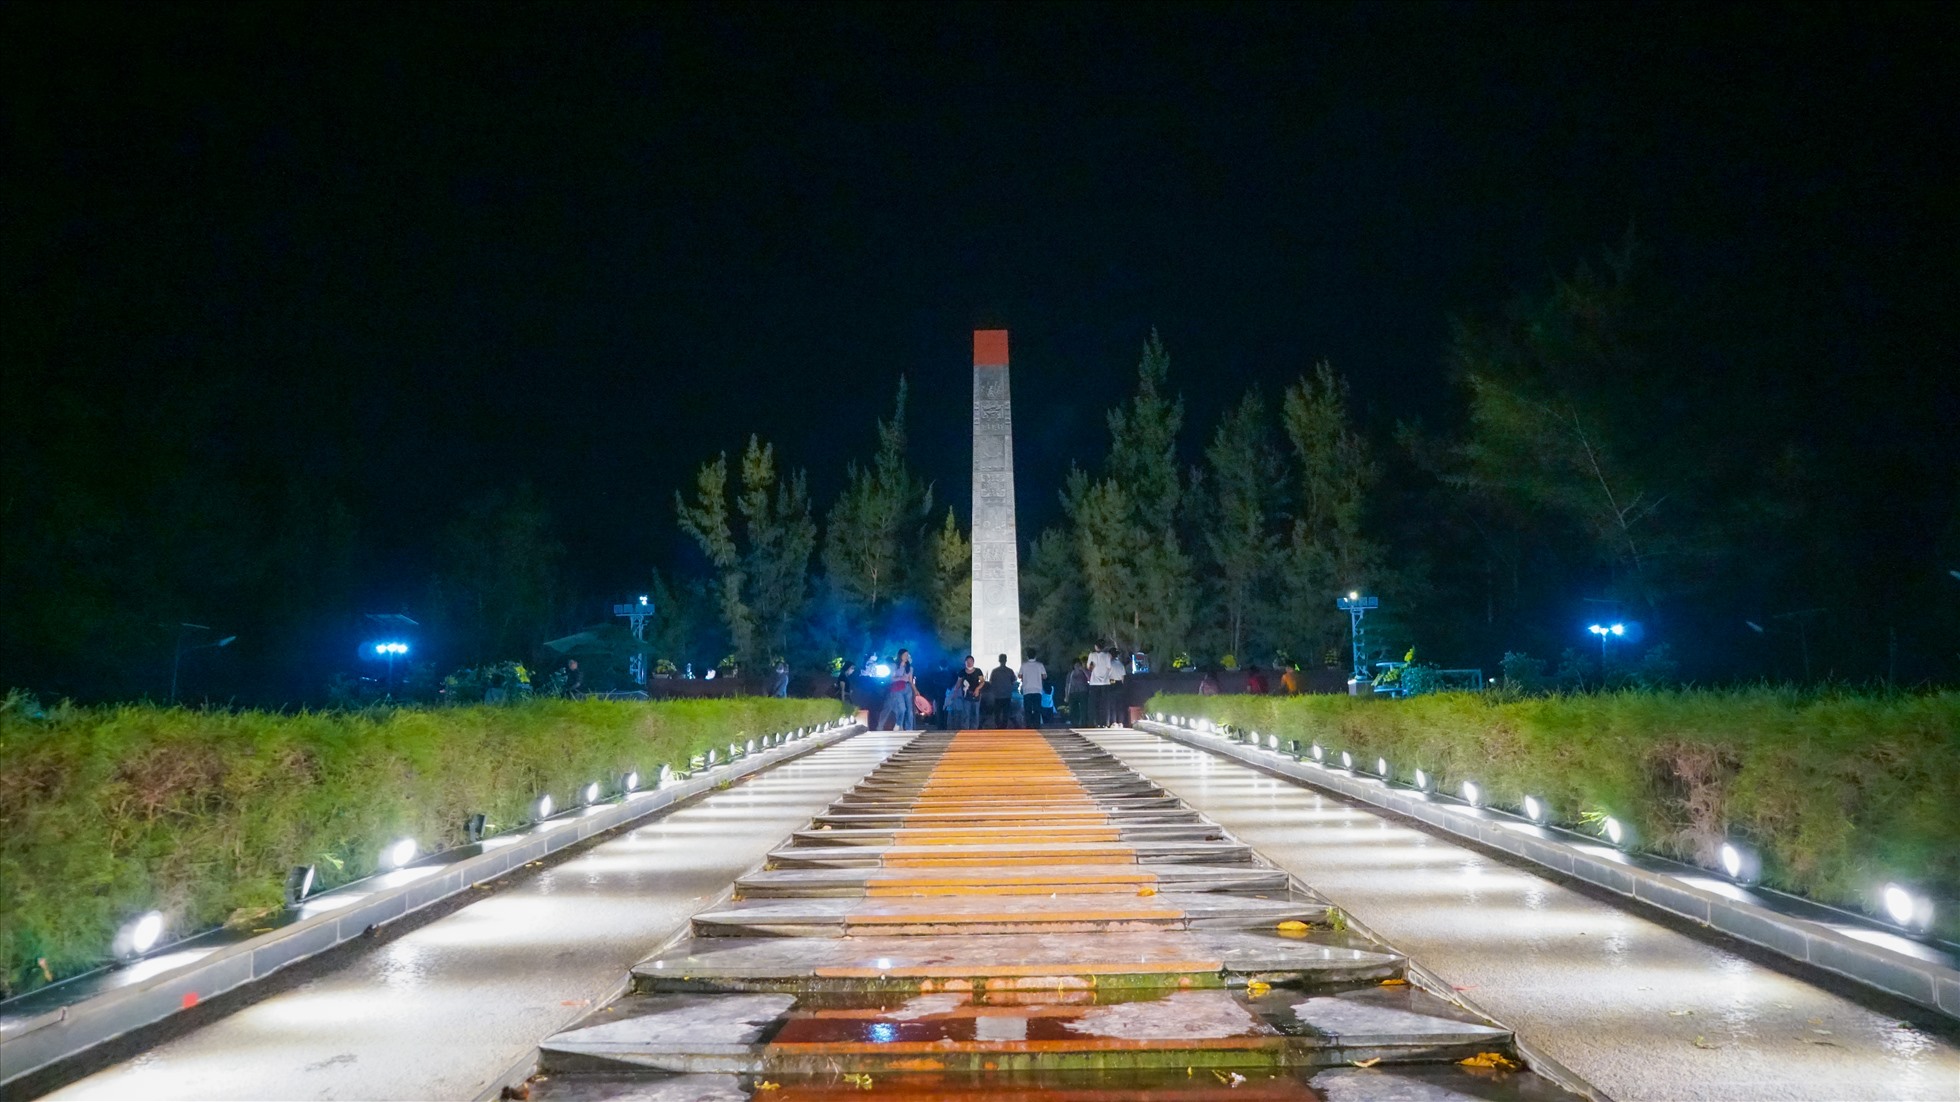 Nghĩa trang Hàng Dương có diện tích khoảng 20 ha, với gần 2.000 ngôi mộ, được chia làm 4 khu A, B, C, D. Mỗi khu gắn với từng giai đoạn lịch sử và tên tuổi của các vị anh hùng. Trong đó có rất nhiều mộ khuyết danh.